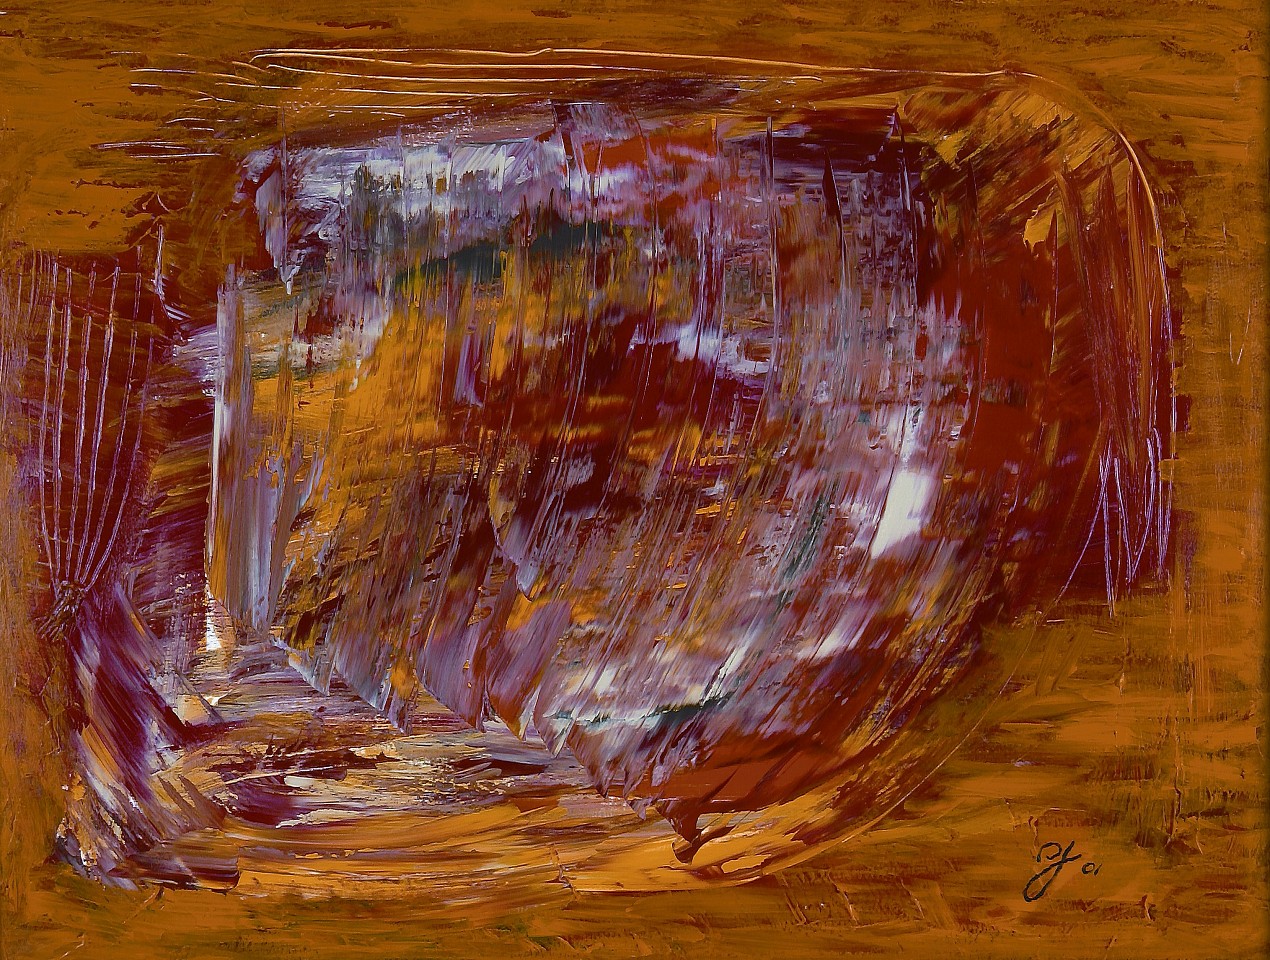 Diego Jacobson, Infinite Wisdom, 2001
Acrylic on Canvas, 36 x 48 in. (91.4 x 121.9 cm)
0625